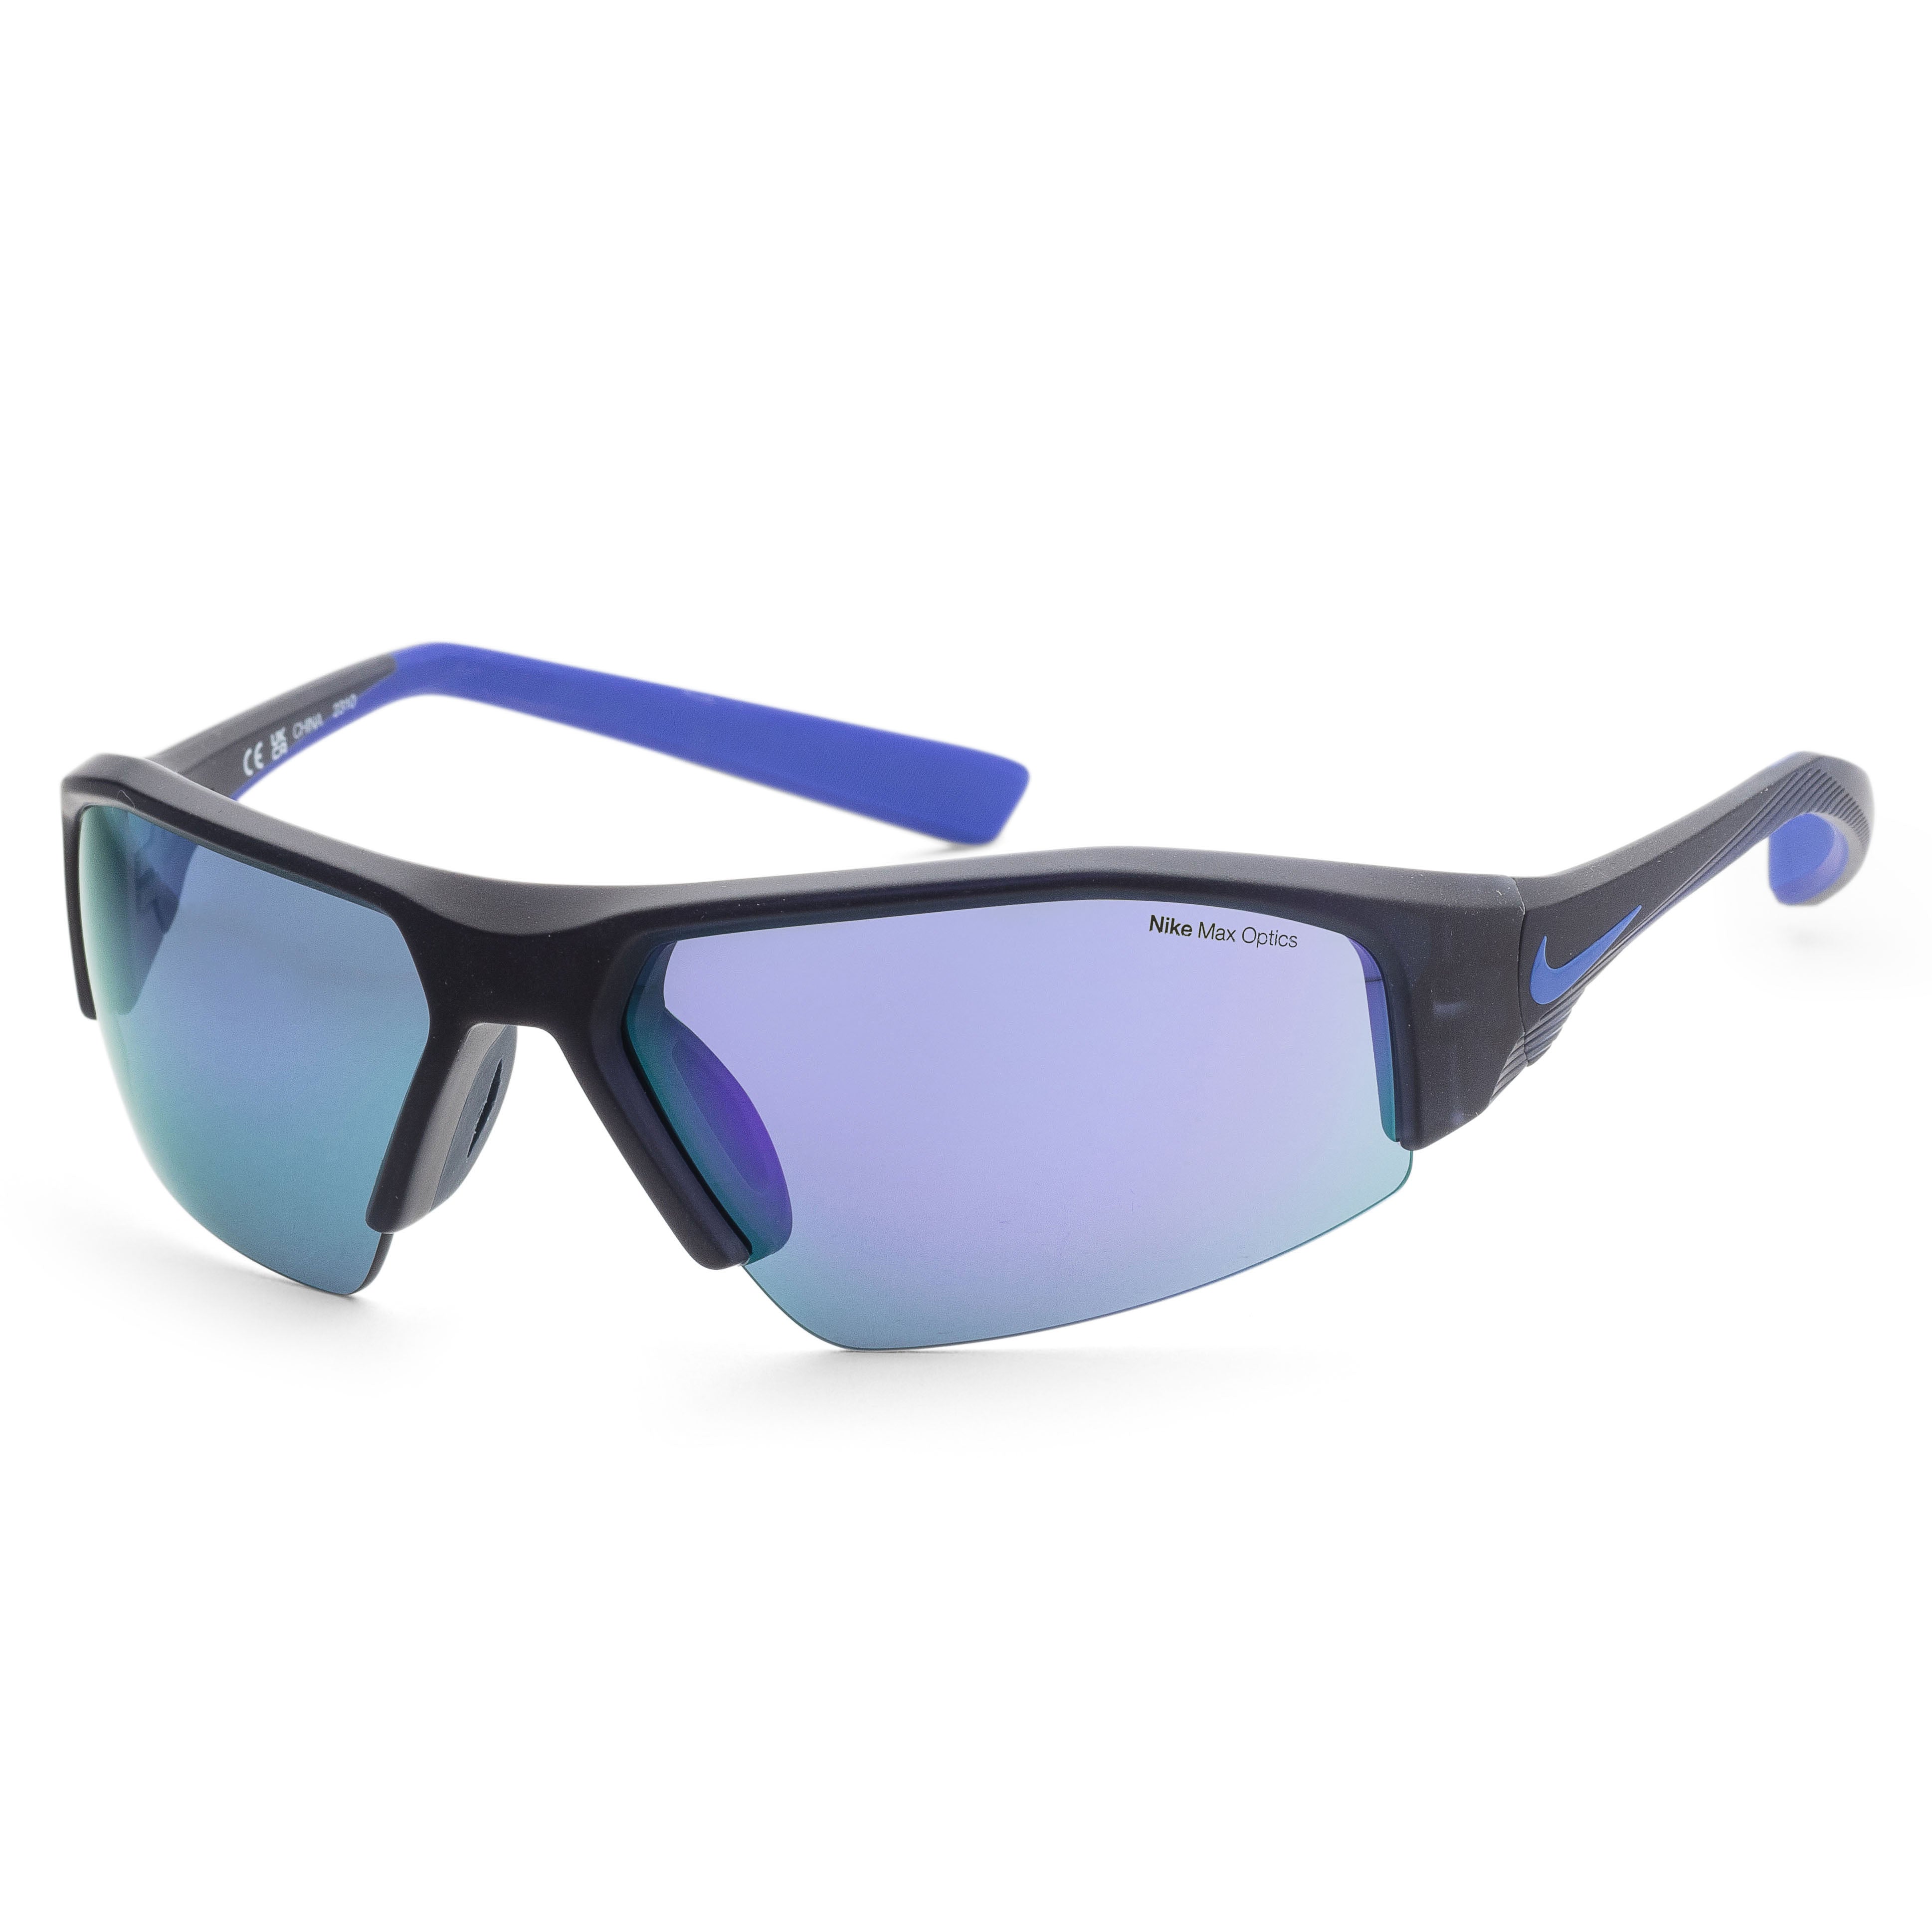 Nike Men's Skylon 70mm Matte Obsidian Sunglasses Dv2151-451 In Blue